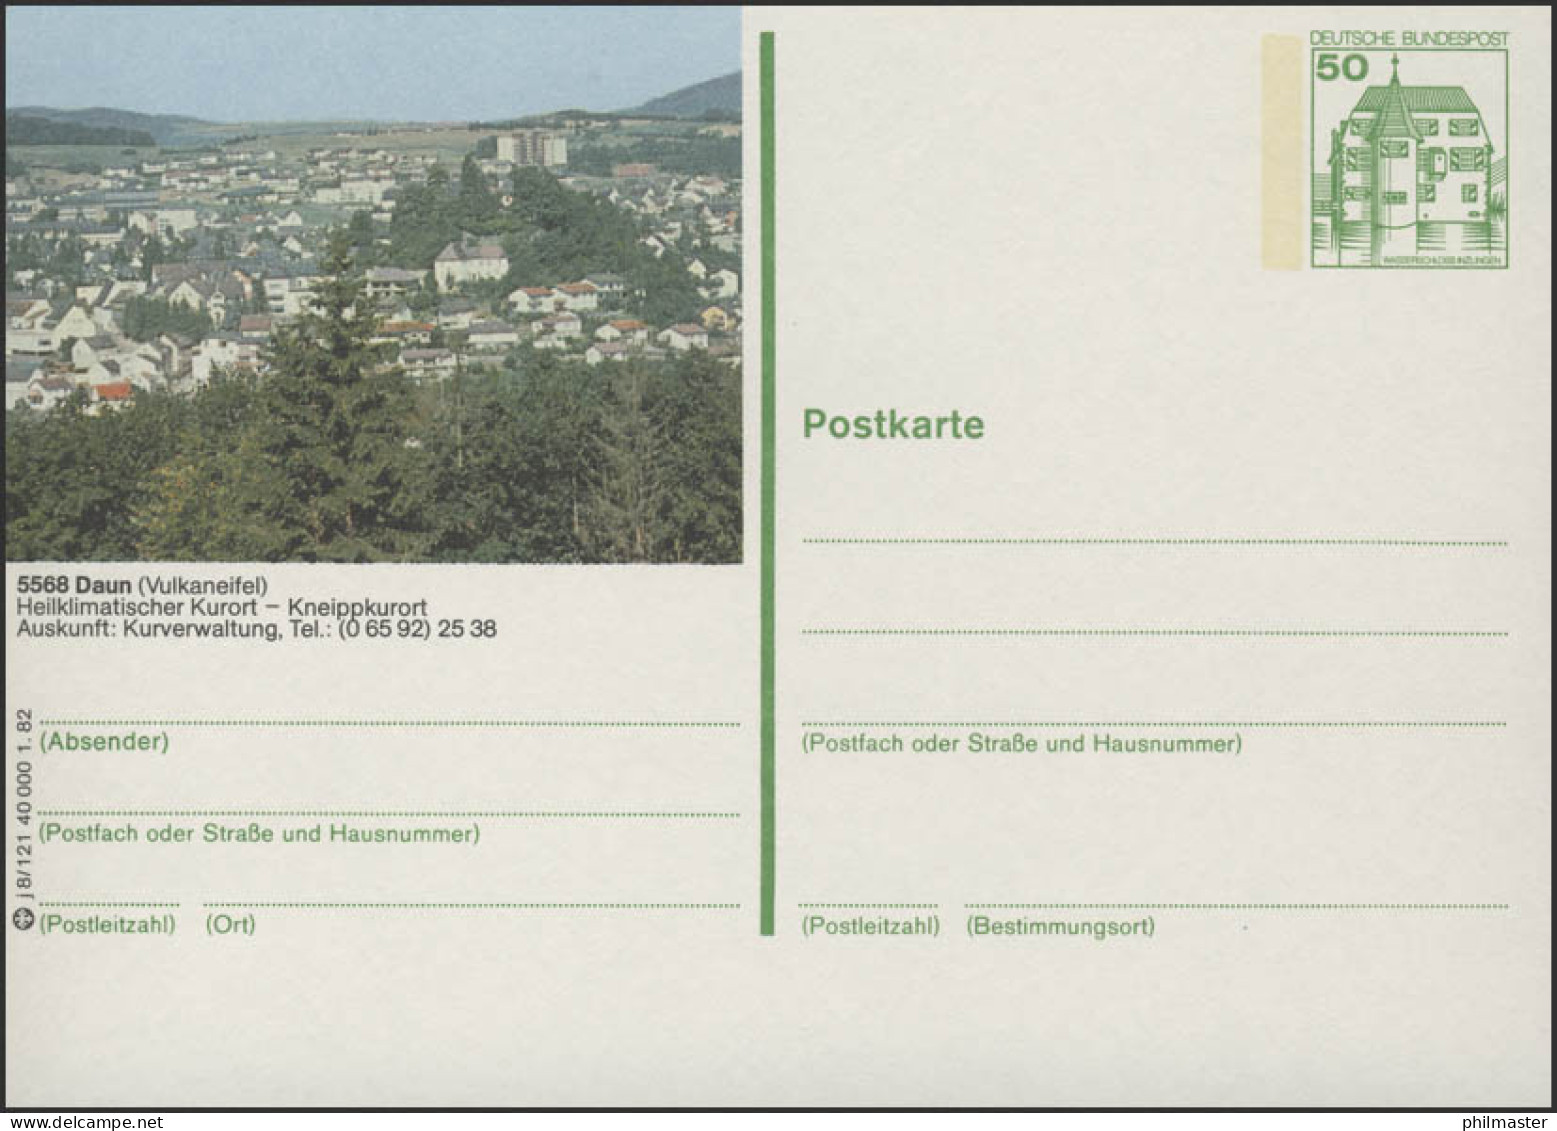 P134-j8/121 - 5568 Daun, Panorama Der Stadt ** - Bildpostkarten - Ungebraucht